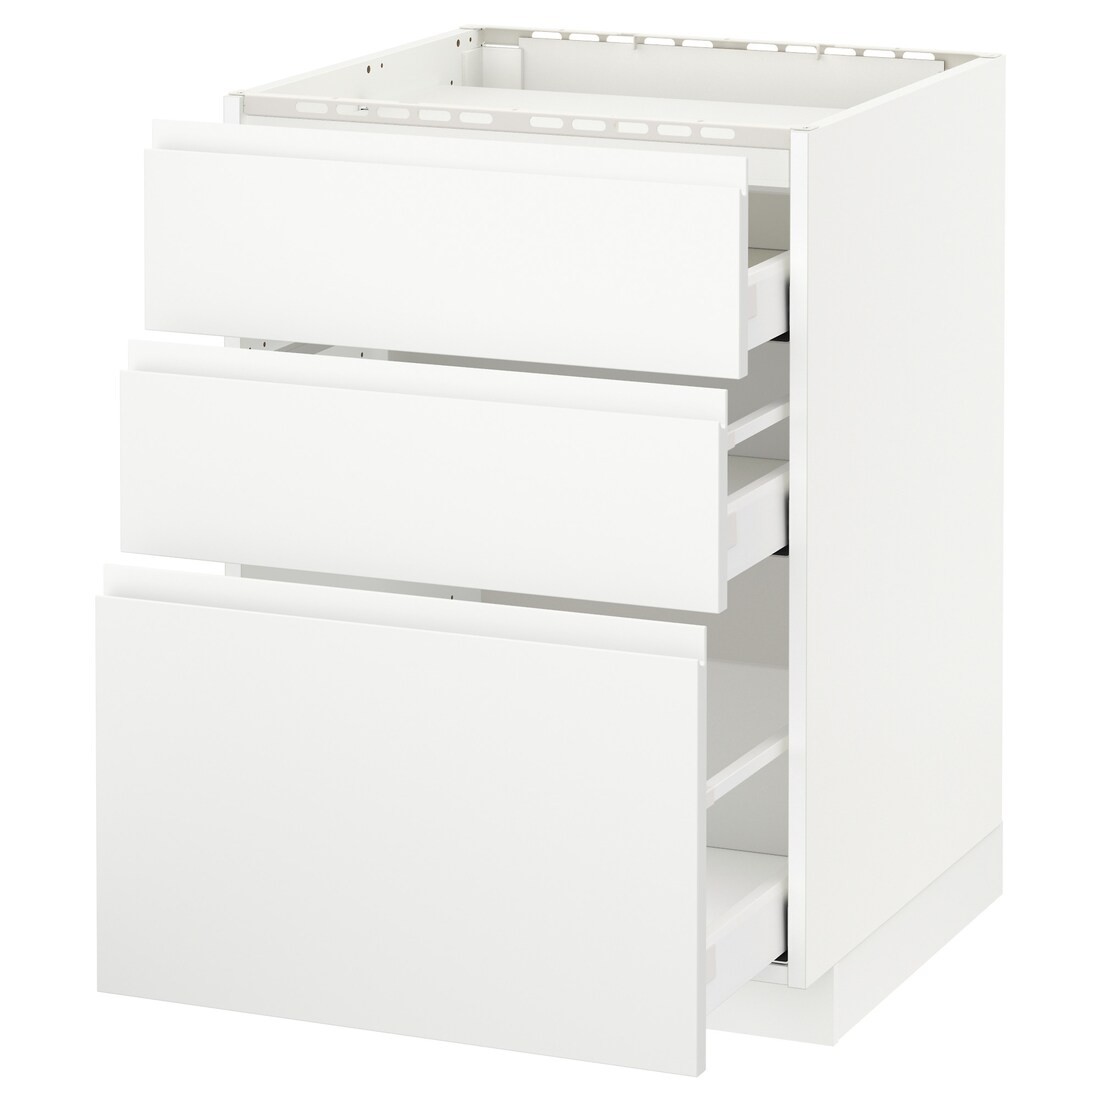 IKEA METOD МЕТОД / MAXIMERA МАКСИМЕРА Напольный шкаф с ящиками, белый / Voxtorp матовый белый, 60x60 см 49112789 | 491.127.89